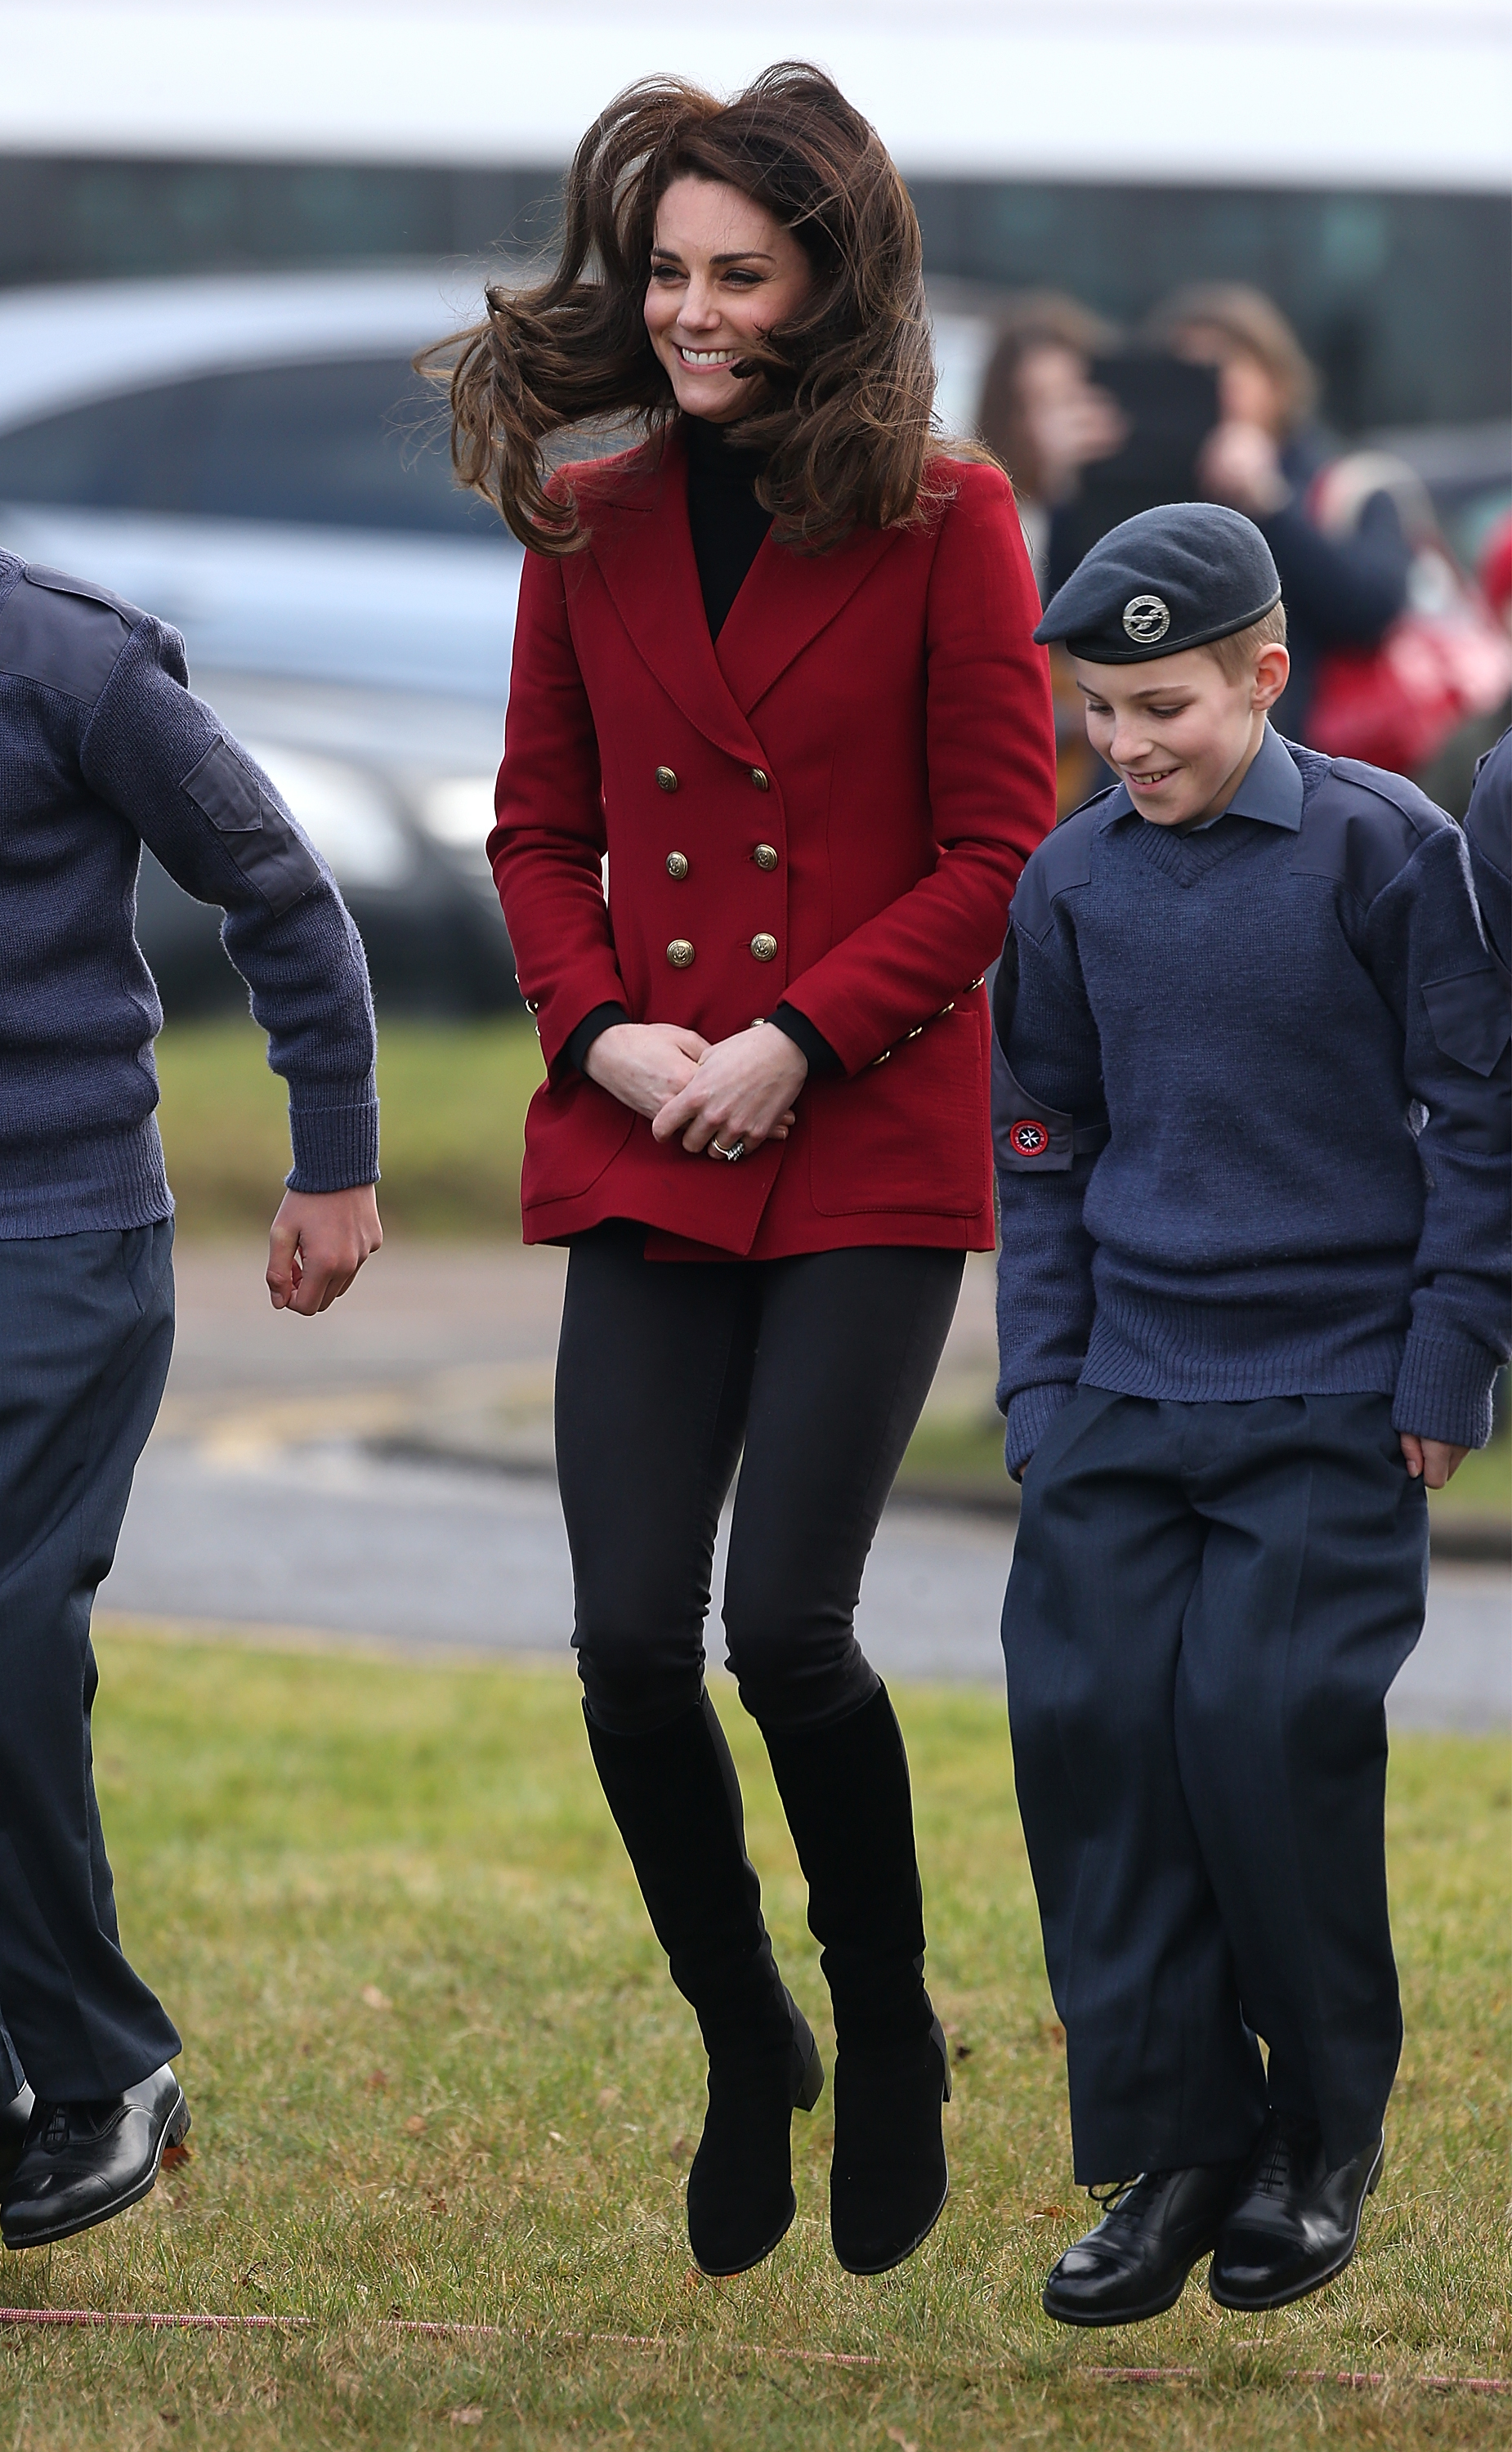 Bemyndigelse møl farve See Kate Middleton Photo Valentine's Day | Time